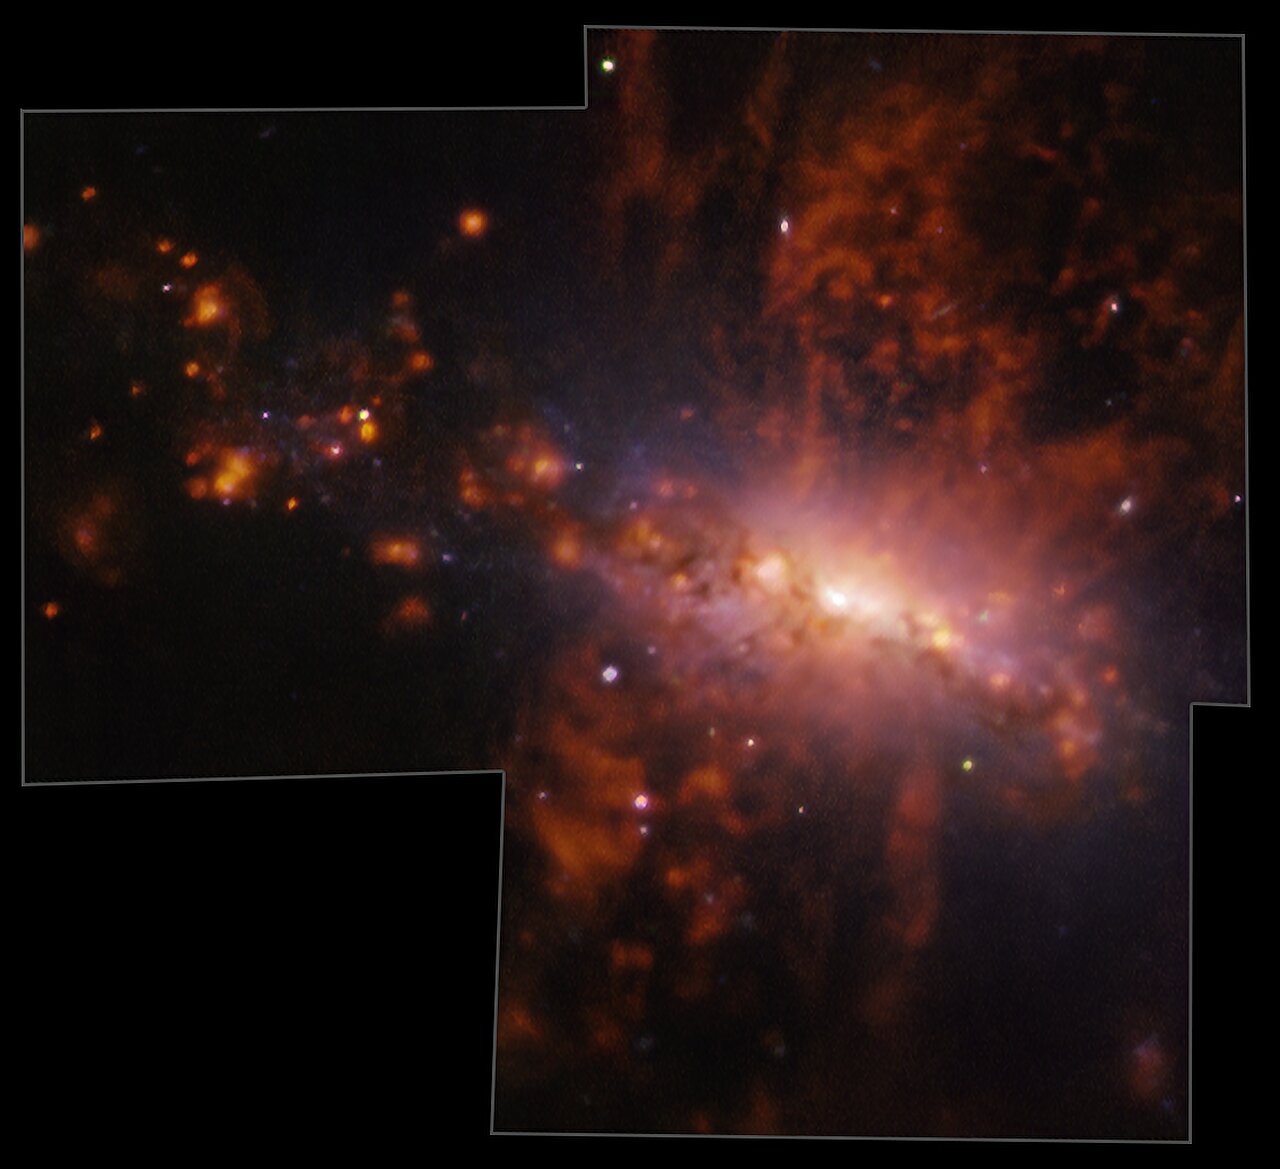 Galaksija NGC 4383 se neobično razvija. Plin teče iz njezine jezgre brzinom od preko 200 km/s. Ova tajanstvena erupcija plina ima jedinstven uzrok: formiranje zvijezda. Izvor: ESO/A. Watts i sur